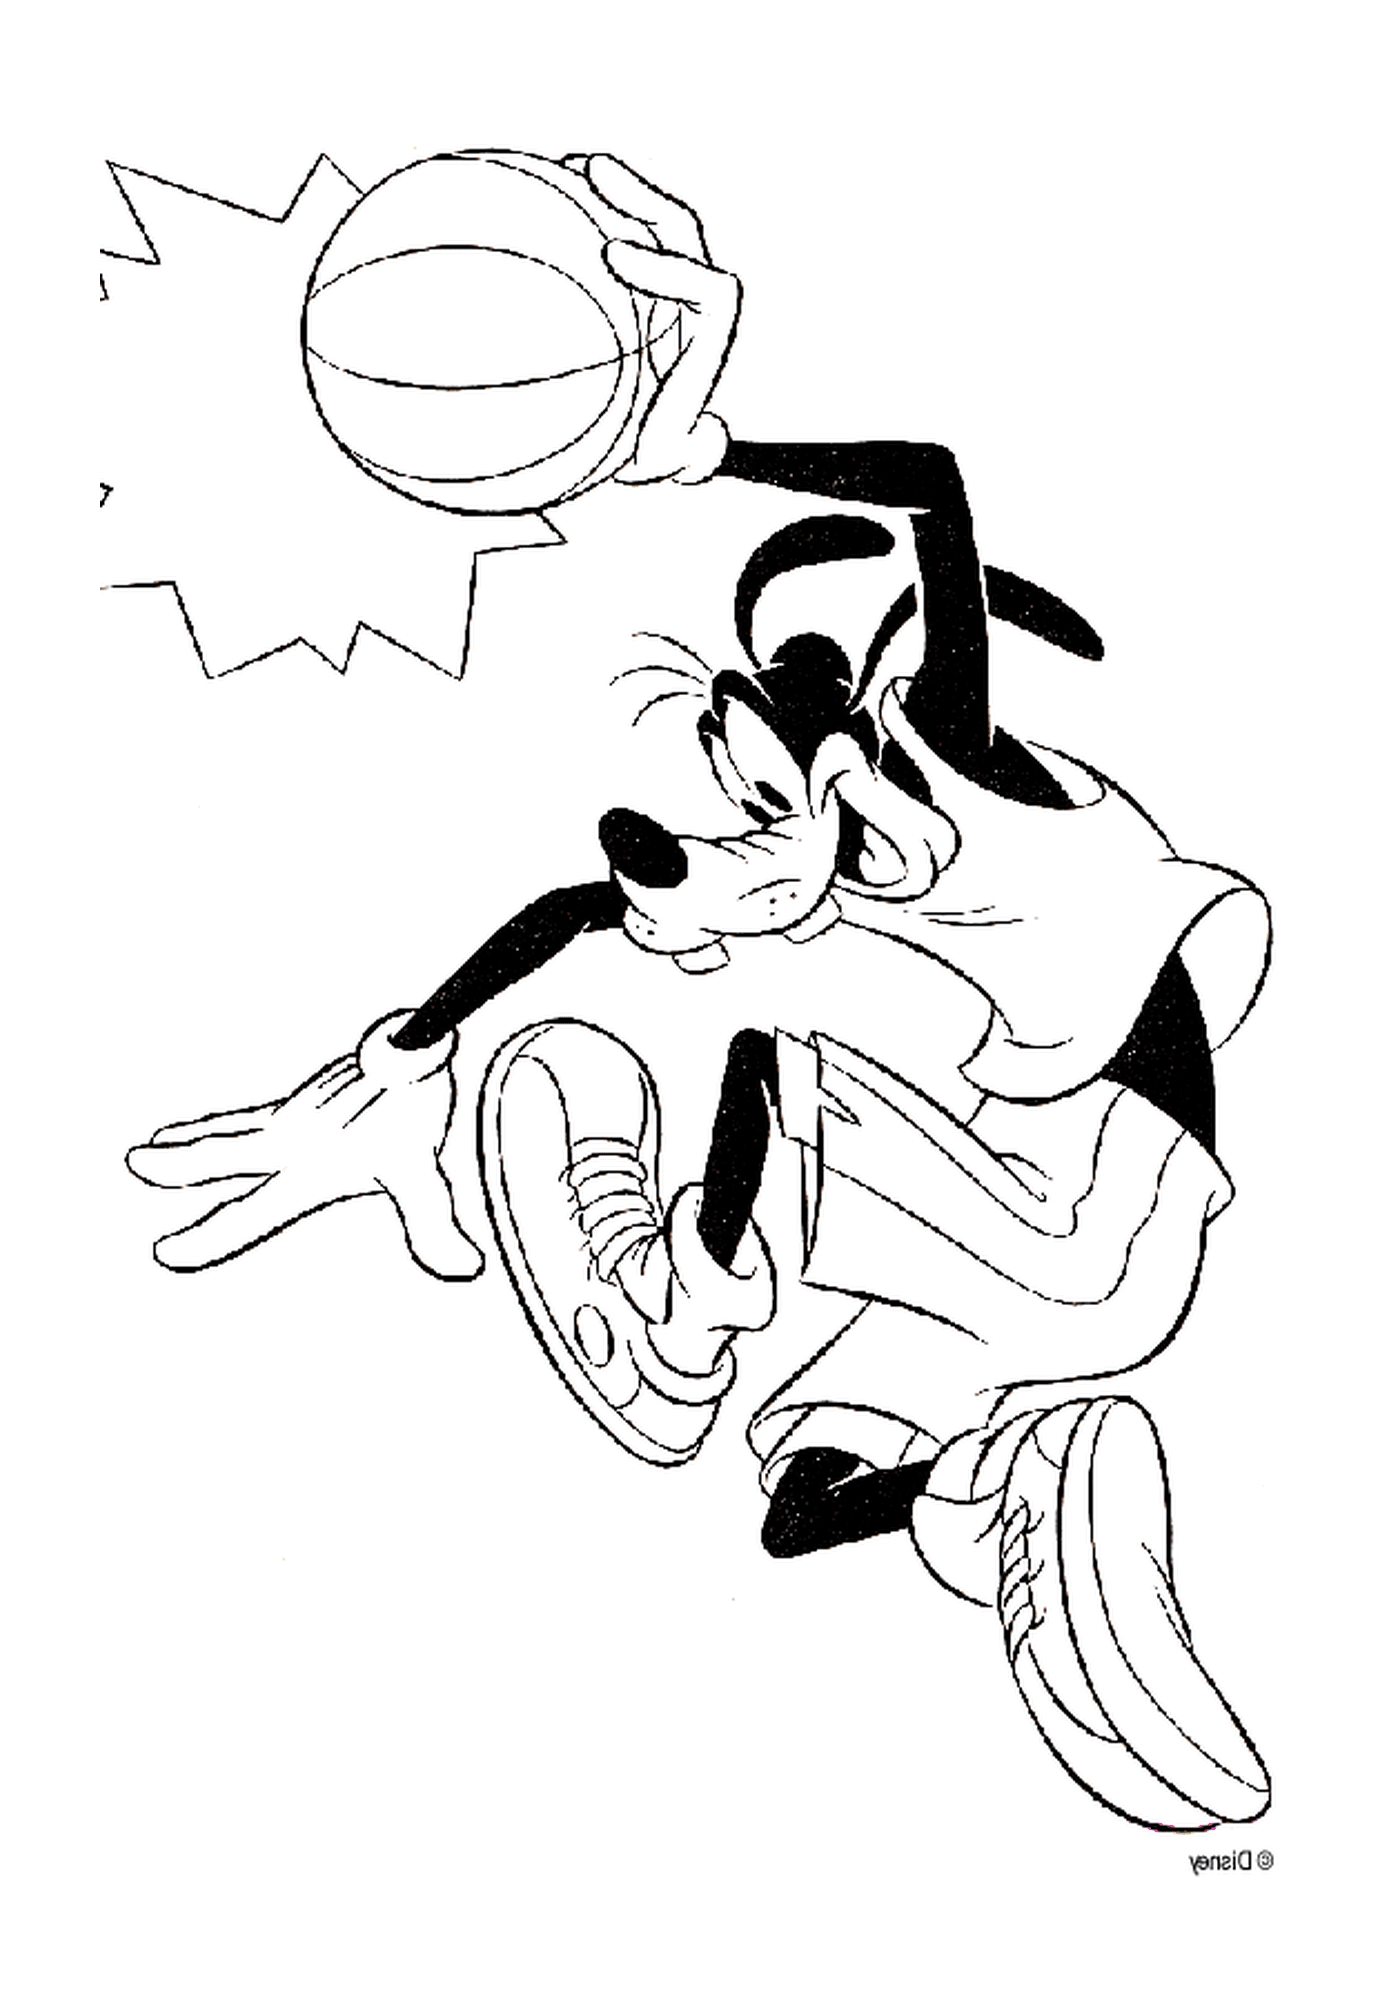  Динго играет в баскетбол с мячом 